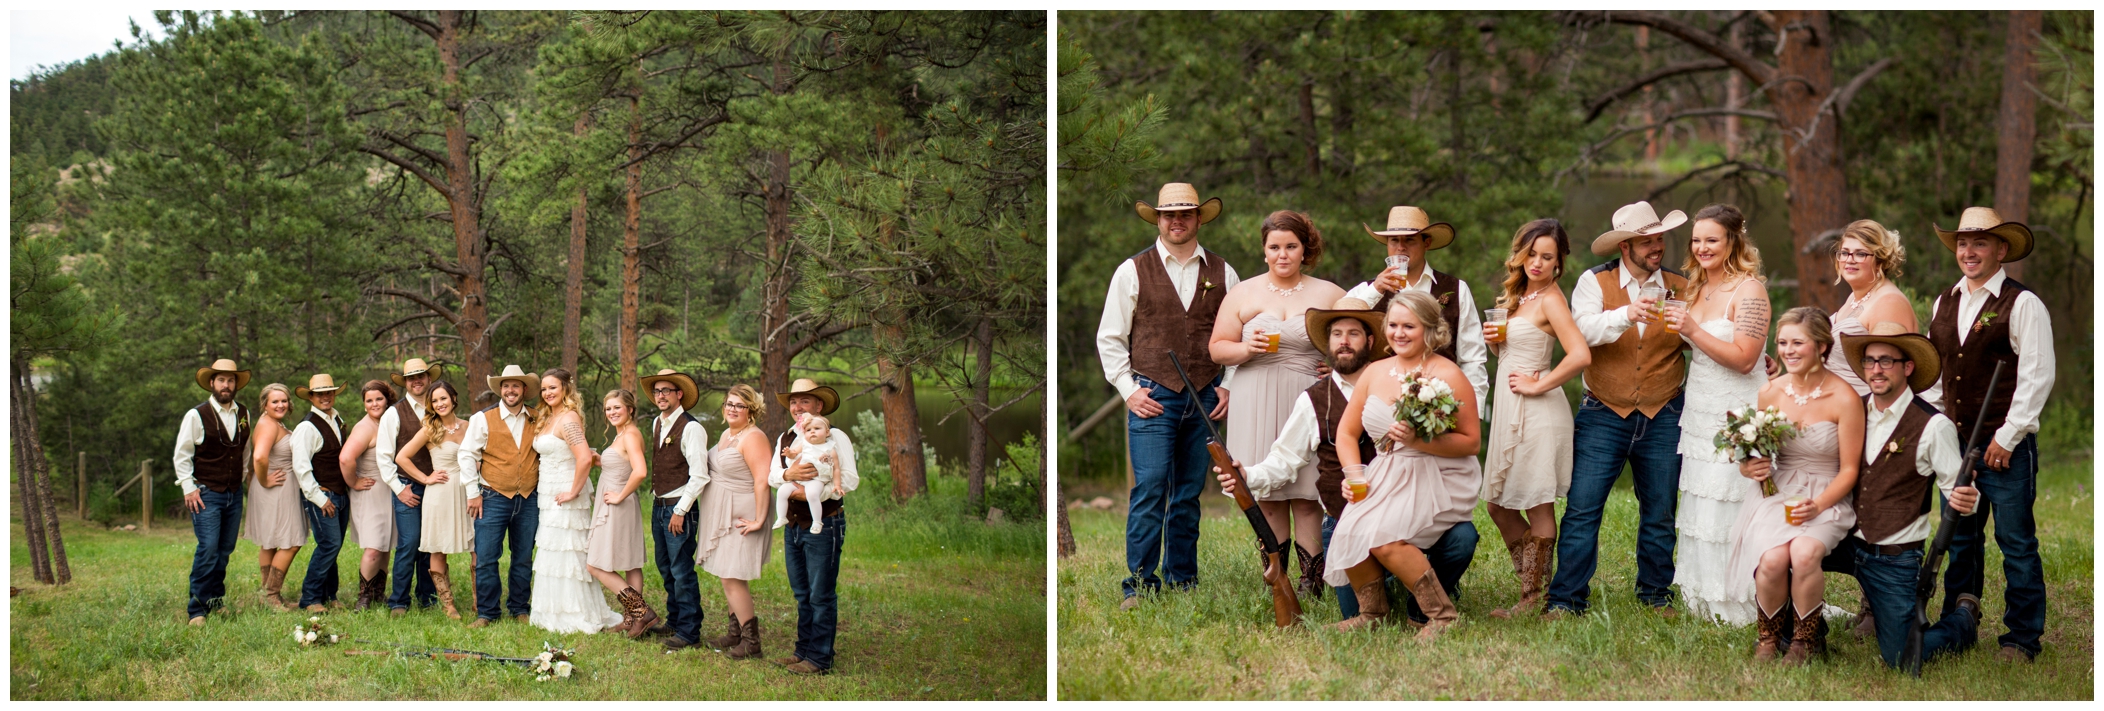 rustic Colorado wedding attire